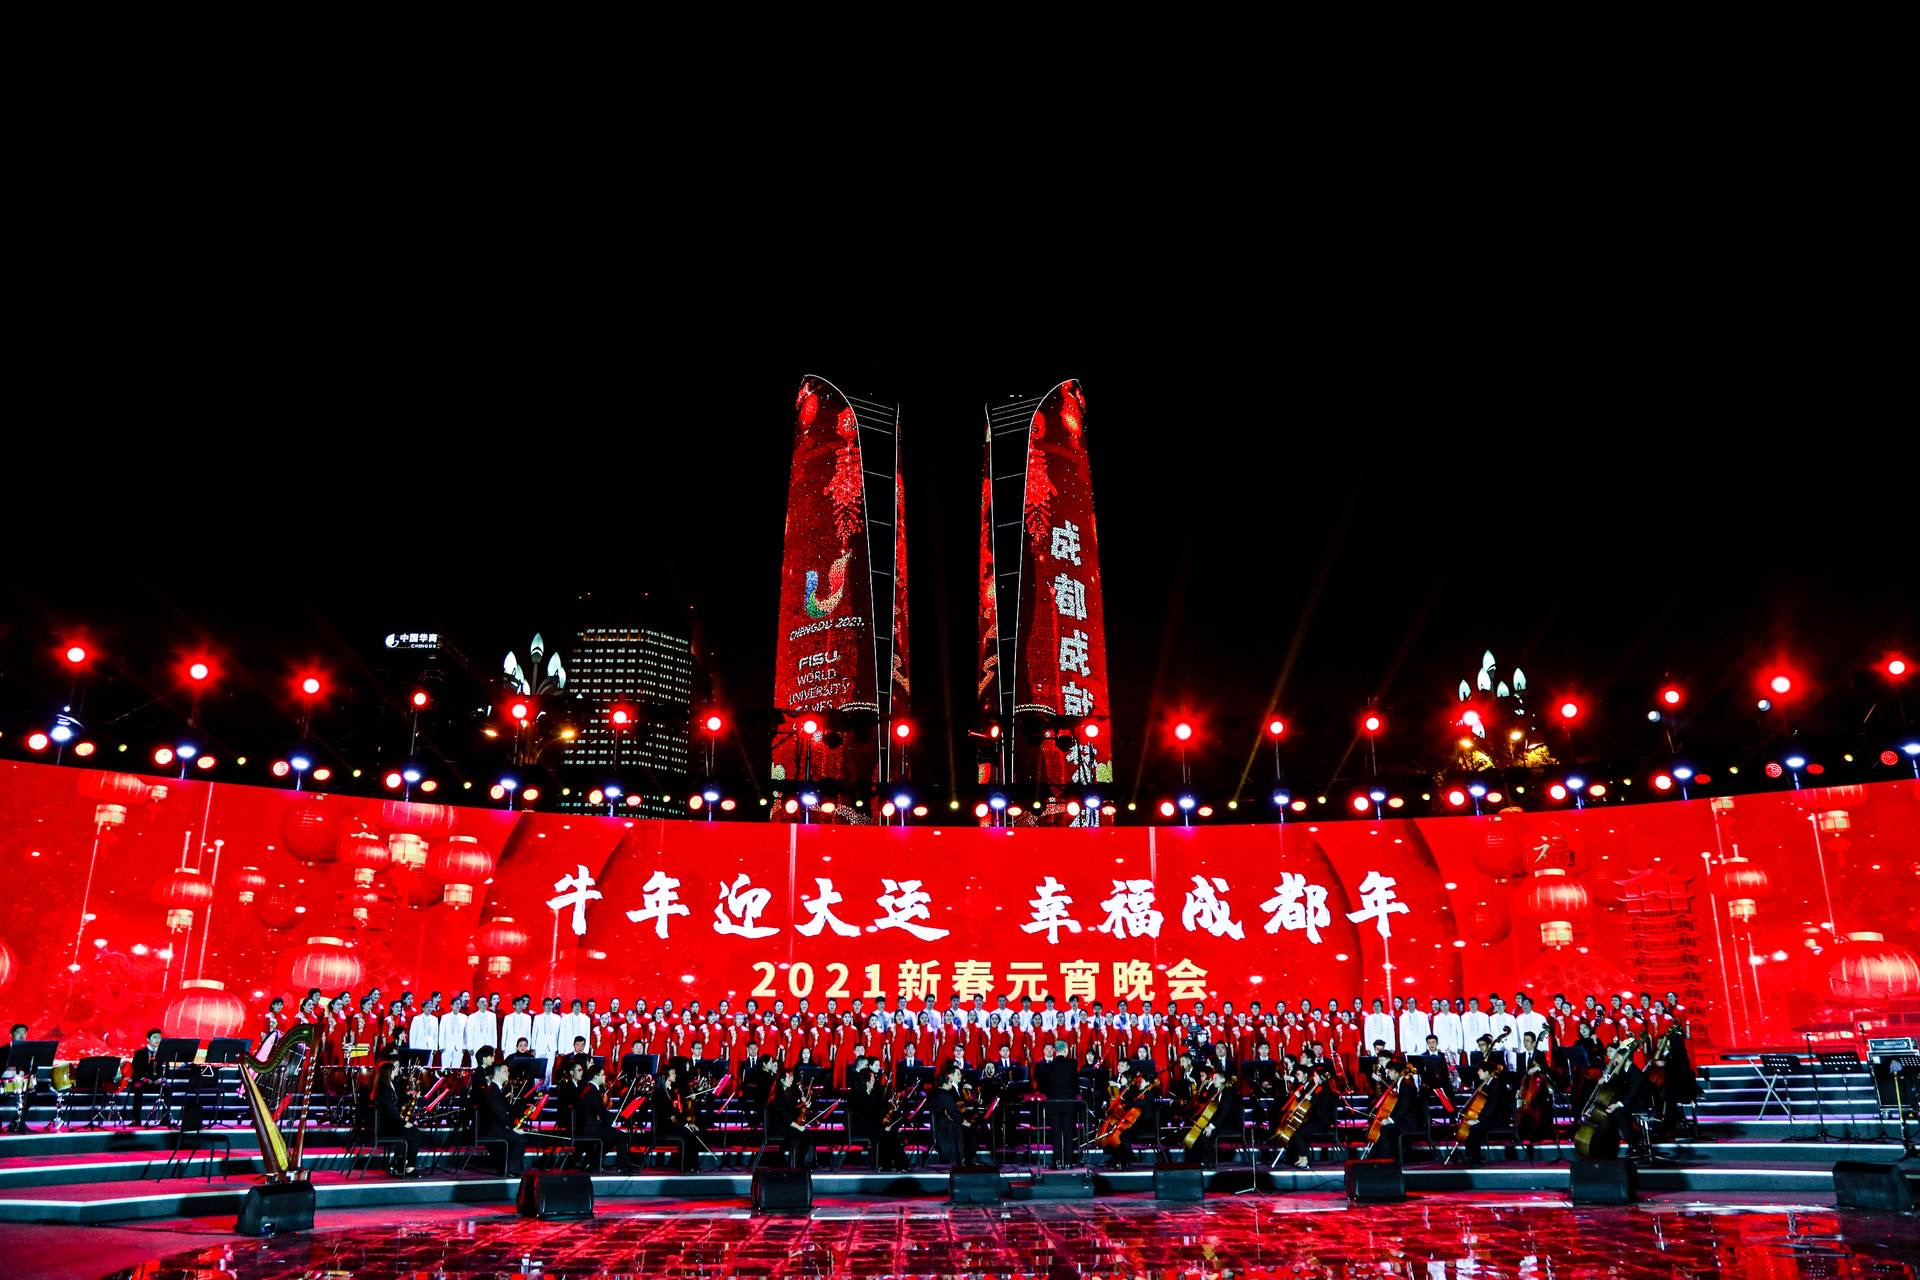 Chengdu 2021 hold Chinese New Year gala to promote World University Games